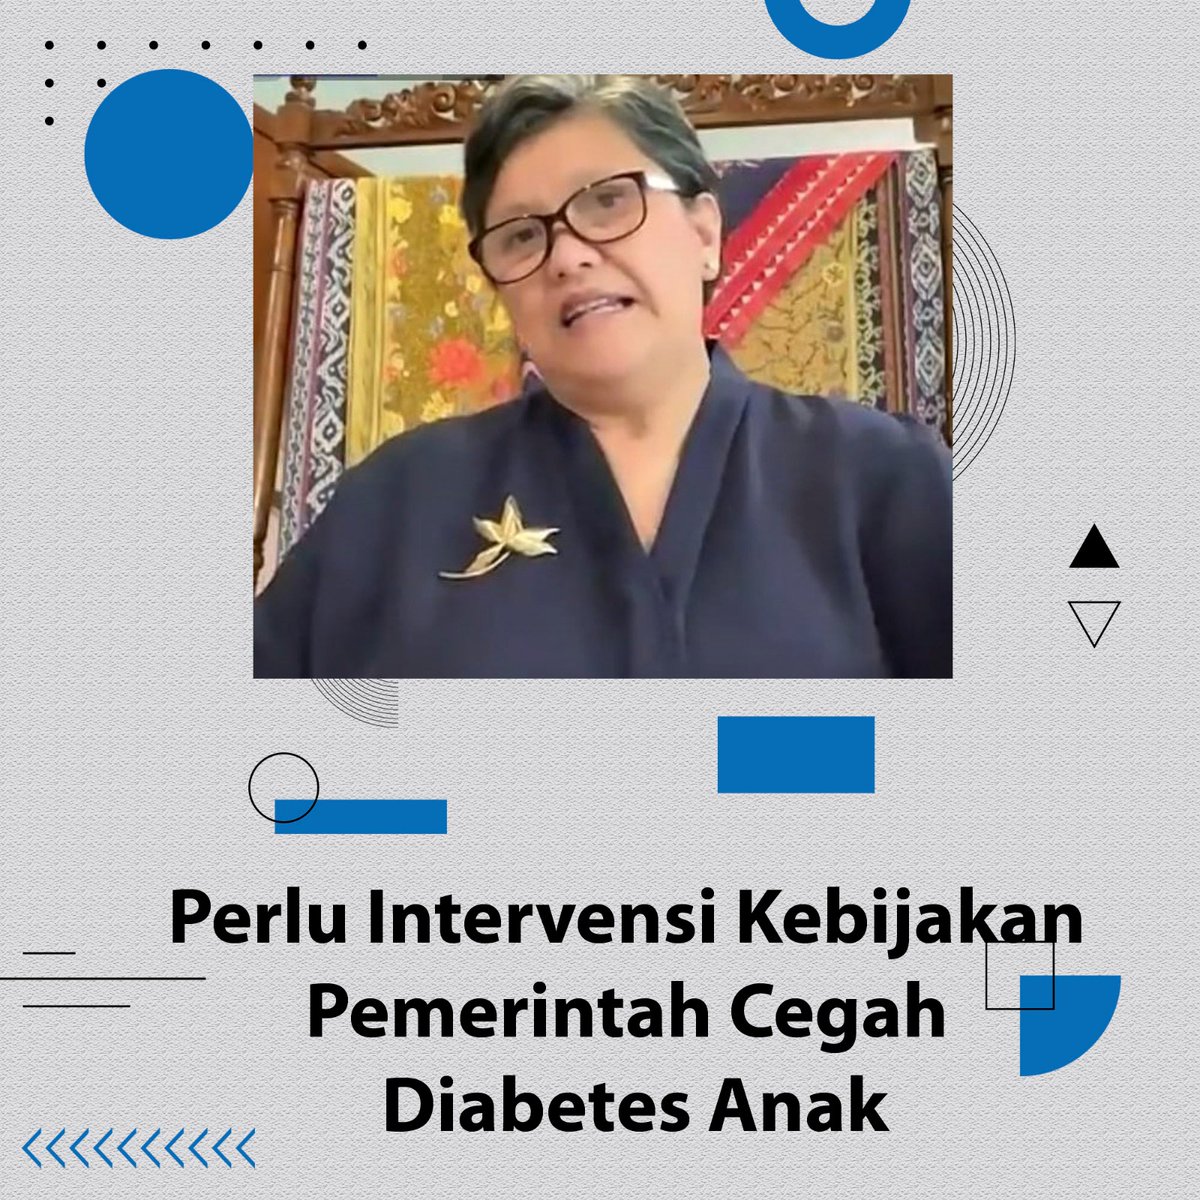 Pentingnya intervensi kebijakan pemerintah dalam mencegah diabetes anak
#ItsTimeRestorasiIndonesia
#NasdemNo5
#AniesPresidenku
#NasDemPilihannya